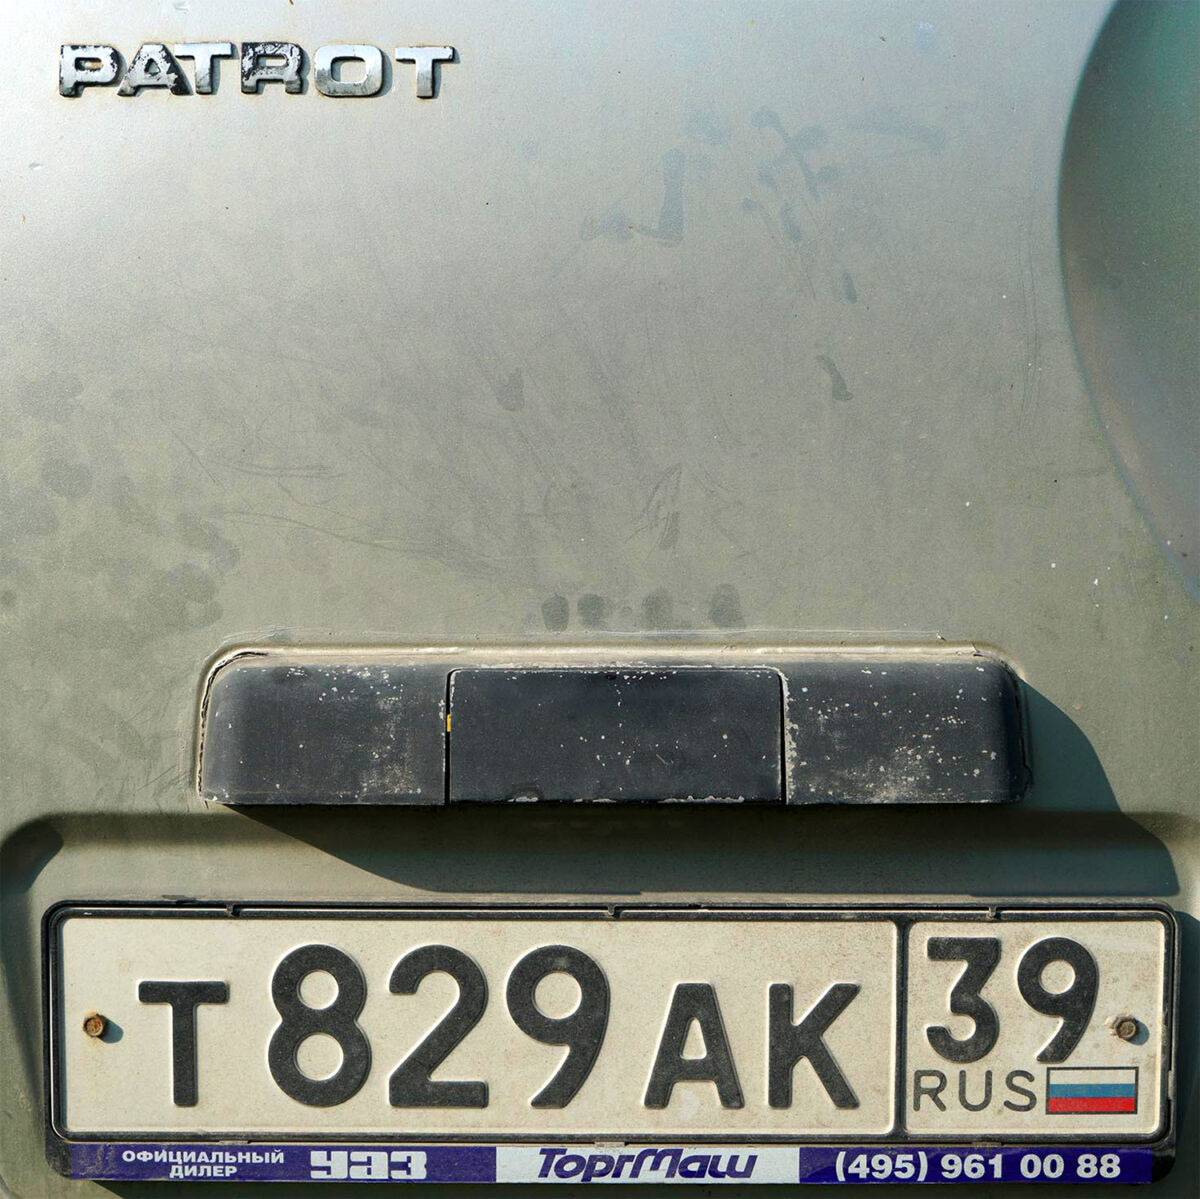 Nummerschild des UAZ PATRIOT